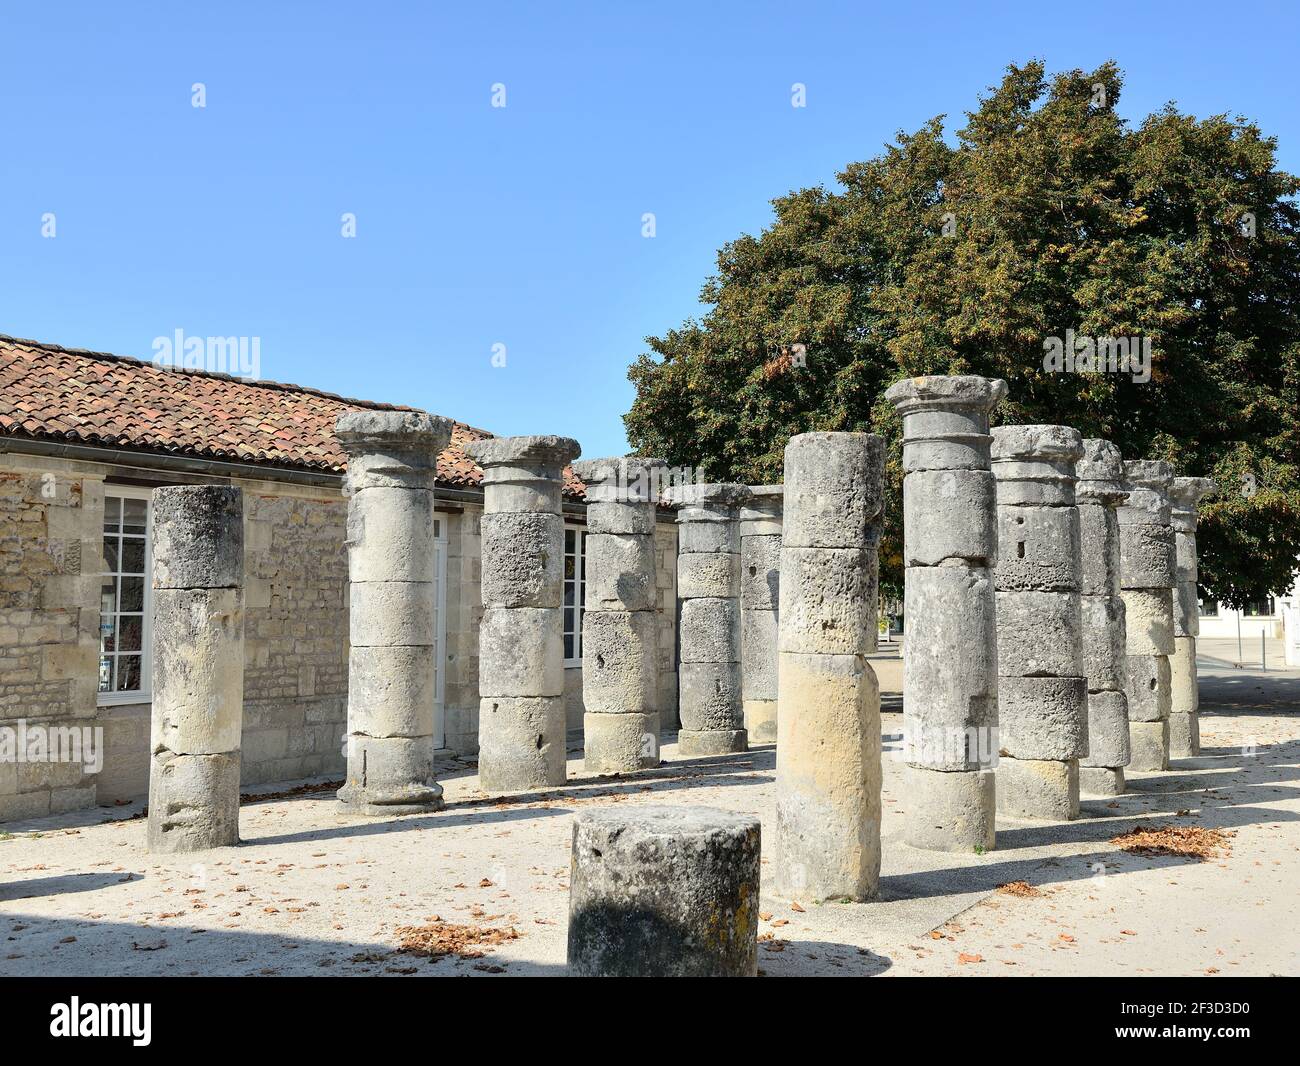 Saintes (centre-ouest de la France) : colonnes romaines près de l'Arc de Germanicus, vestige de l'antiquité romaine, sur la place "Esplanade André Malraux" Banque D'Images